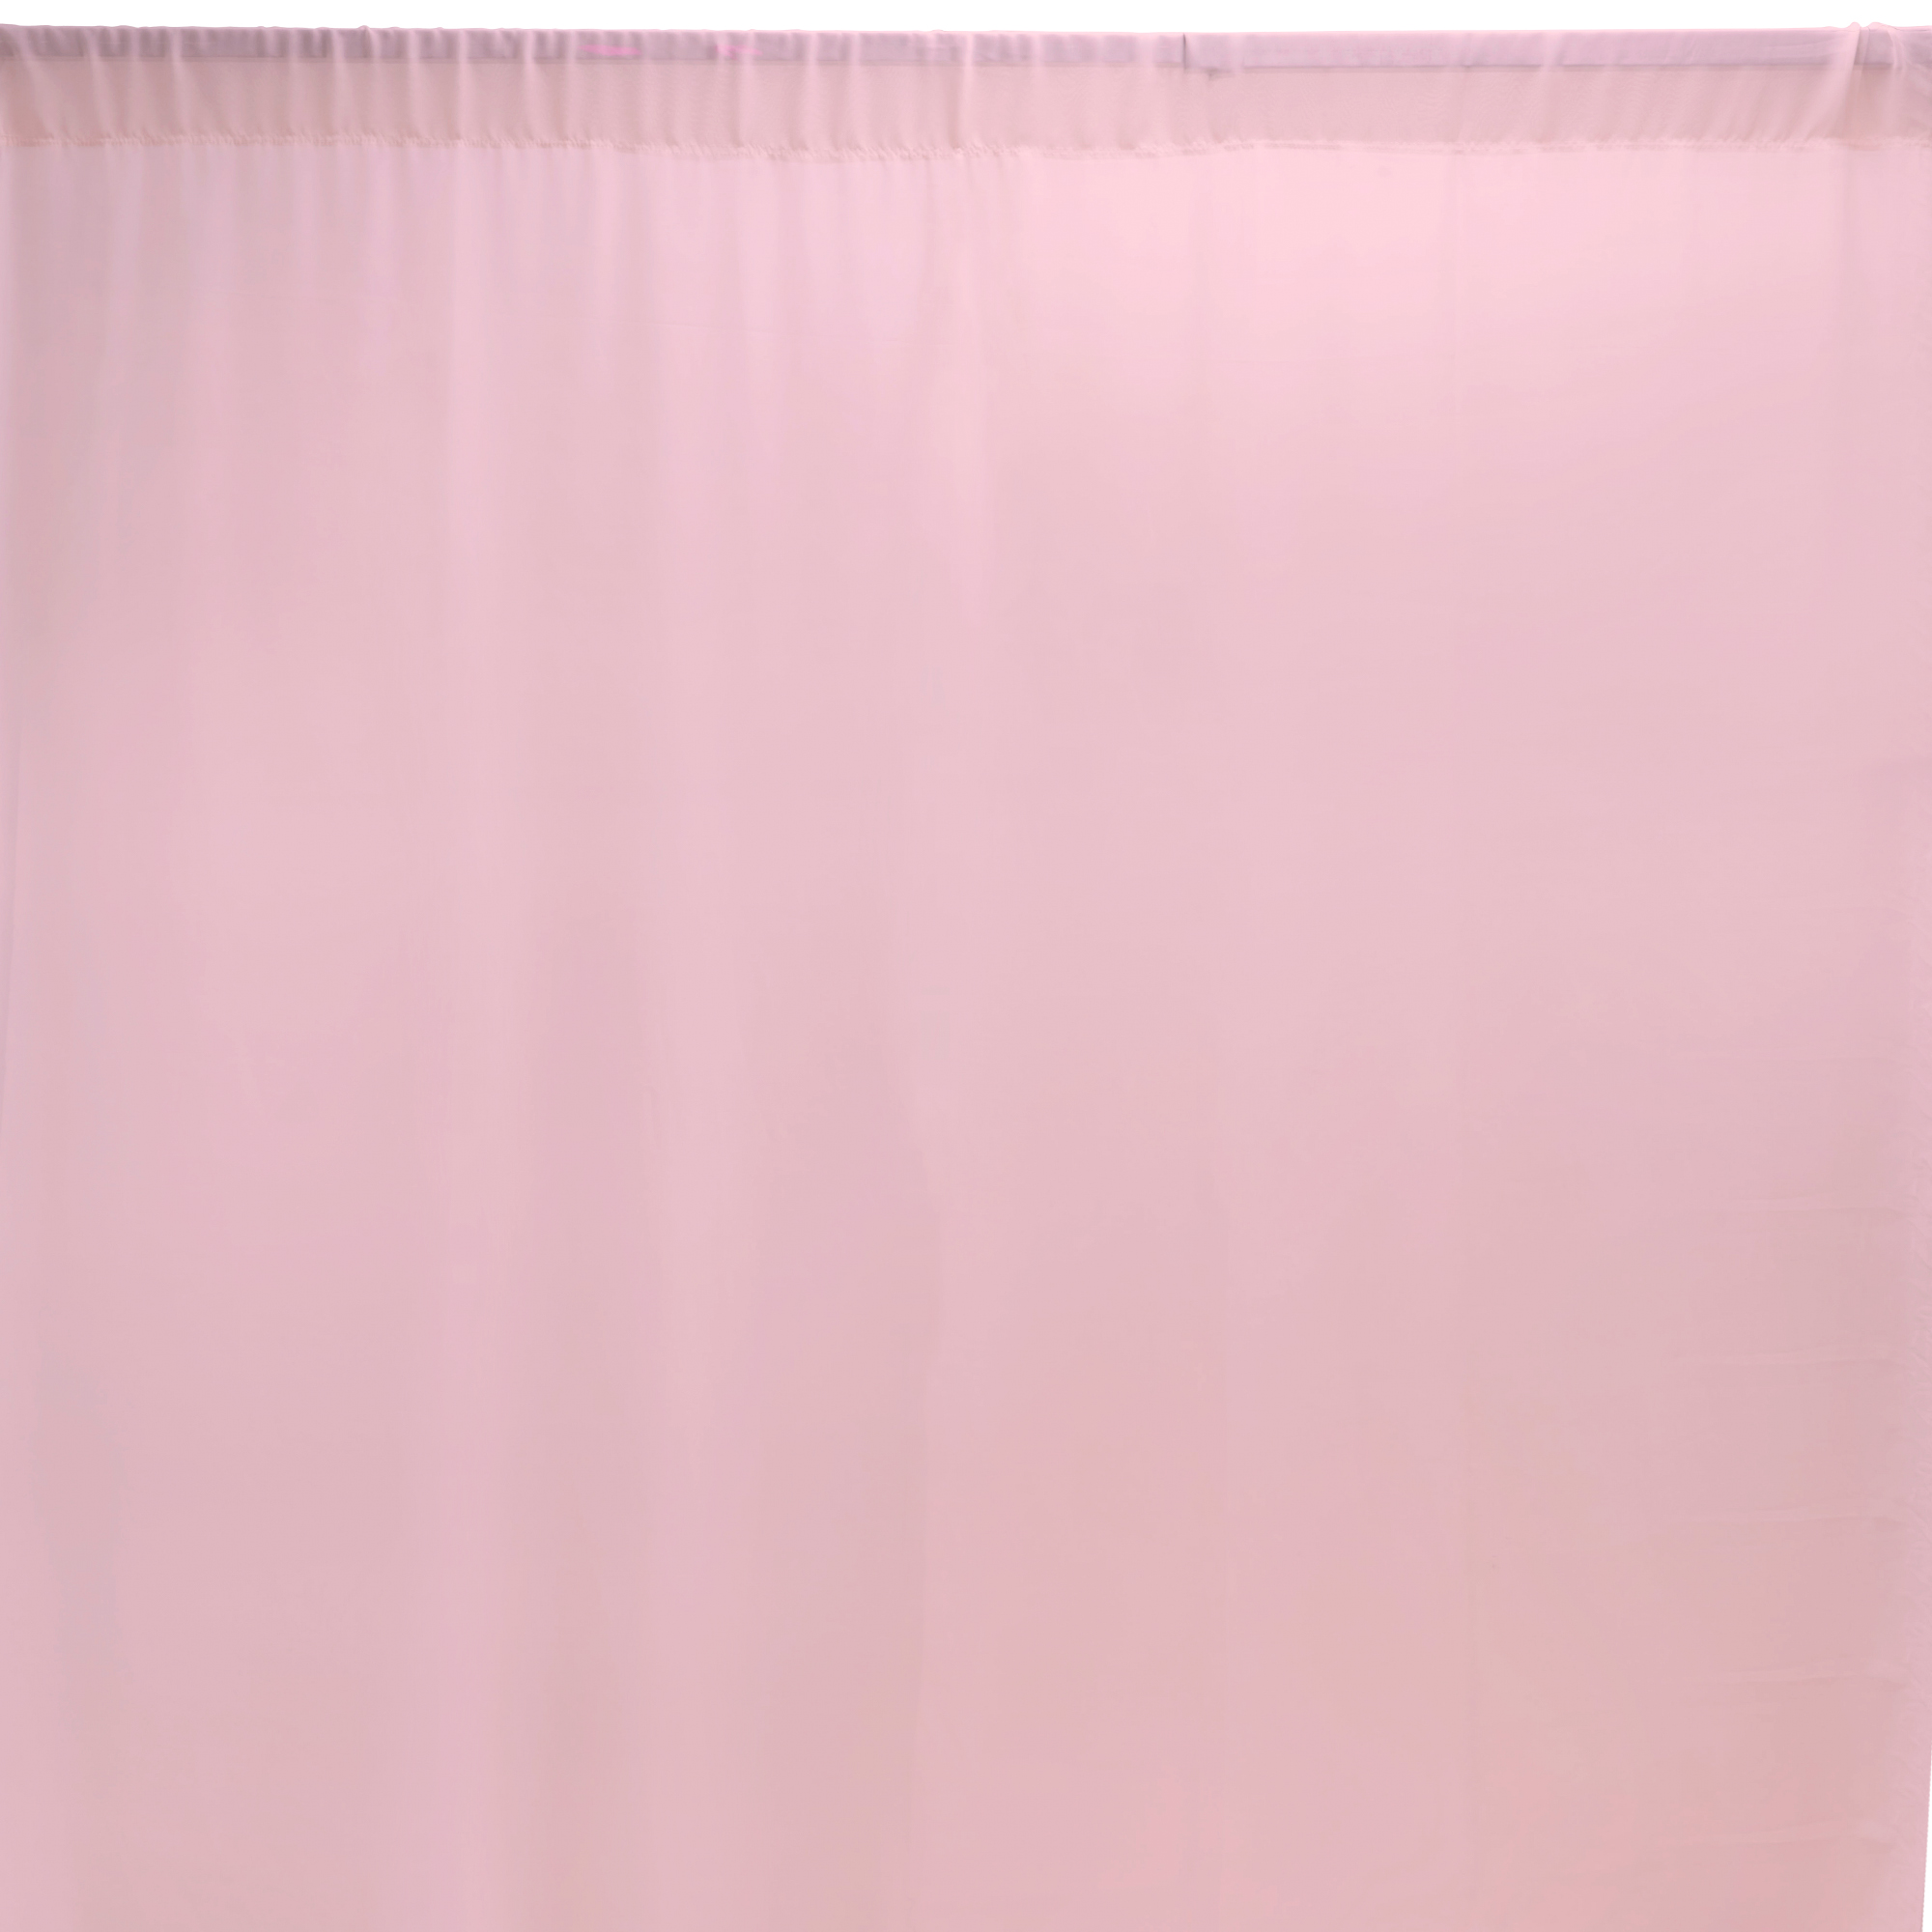 Chiffon Backdrop 5ft x 12ft - Pink